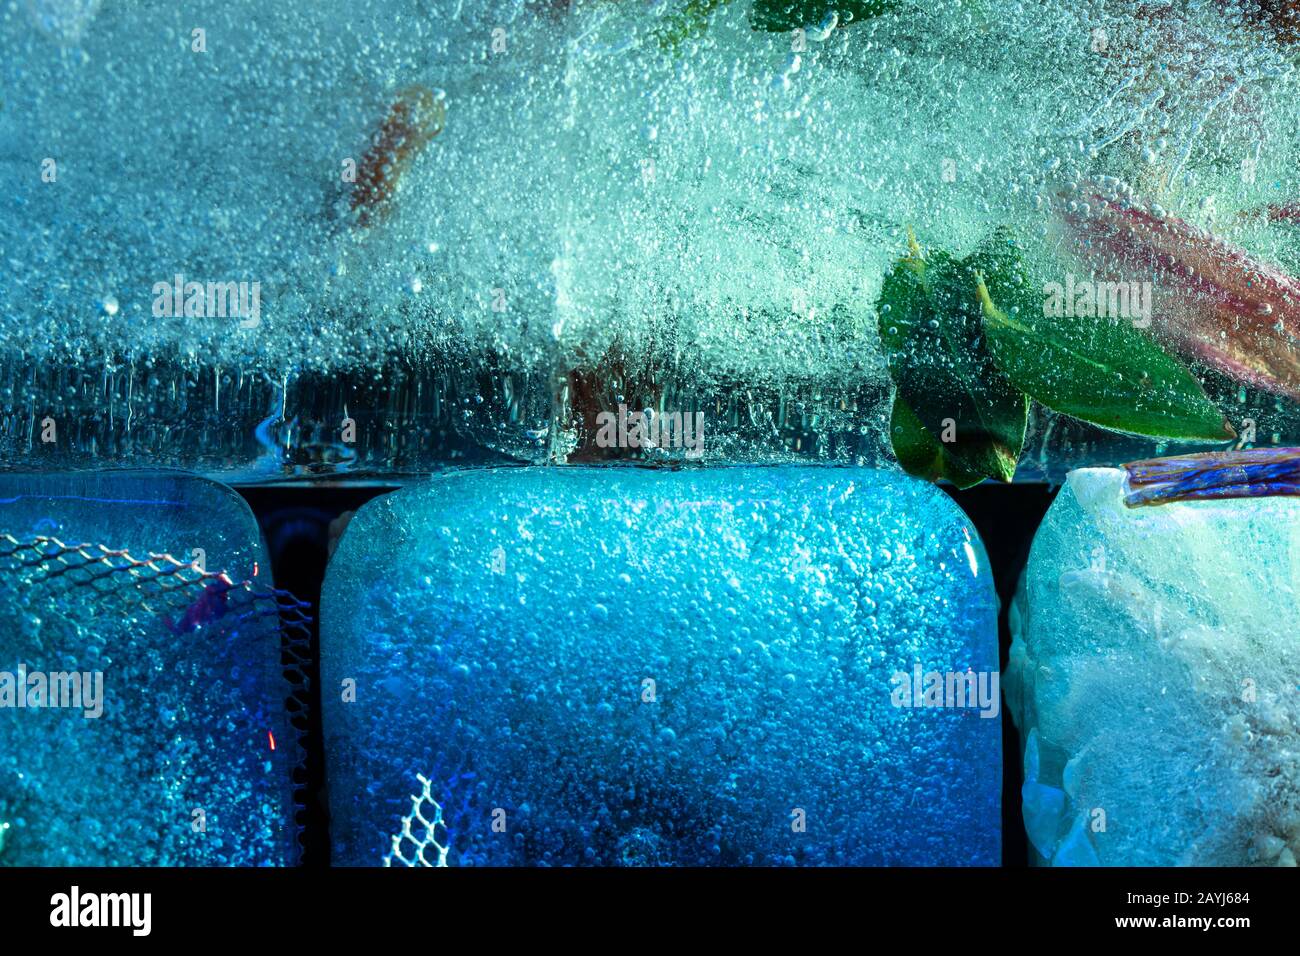 Beleuchteter Eisblock mit tiefgefrorener Textur - moderner abstrakter Makrohintergrund in Blautönen Stockfoto